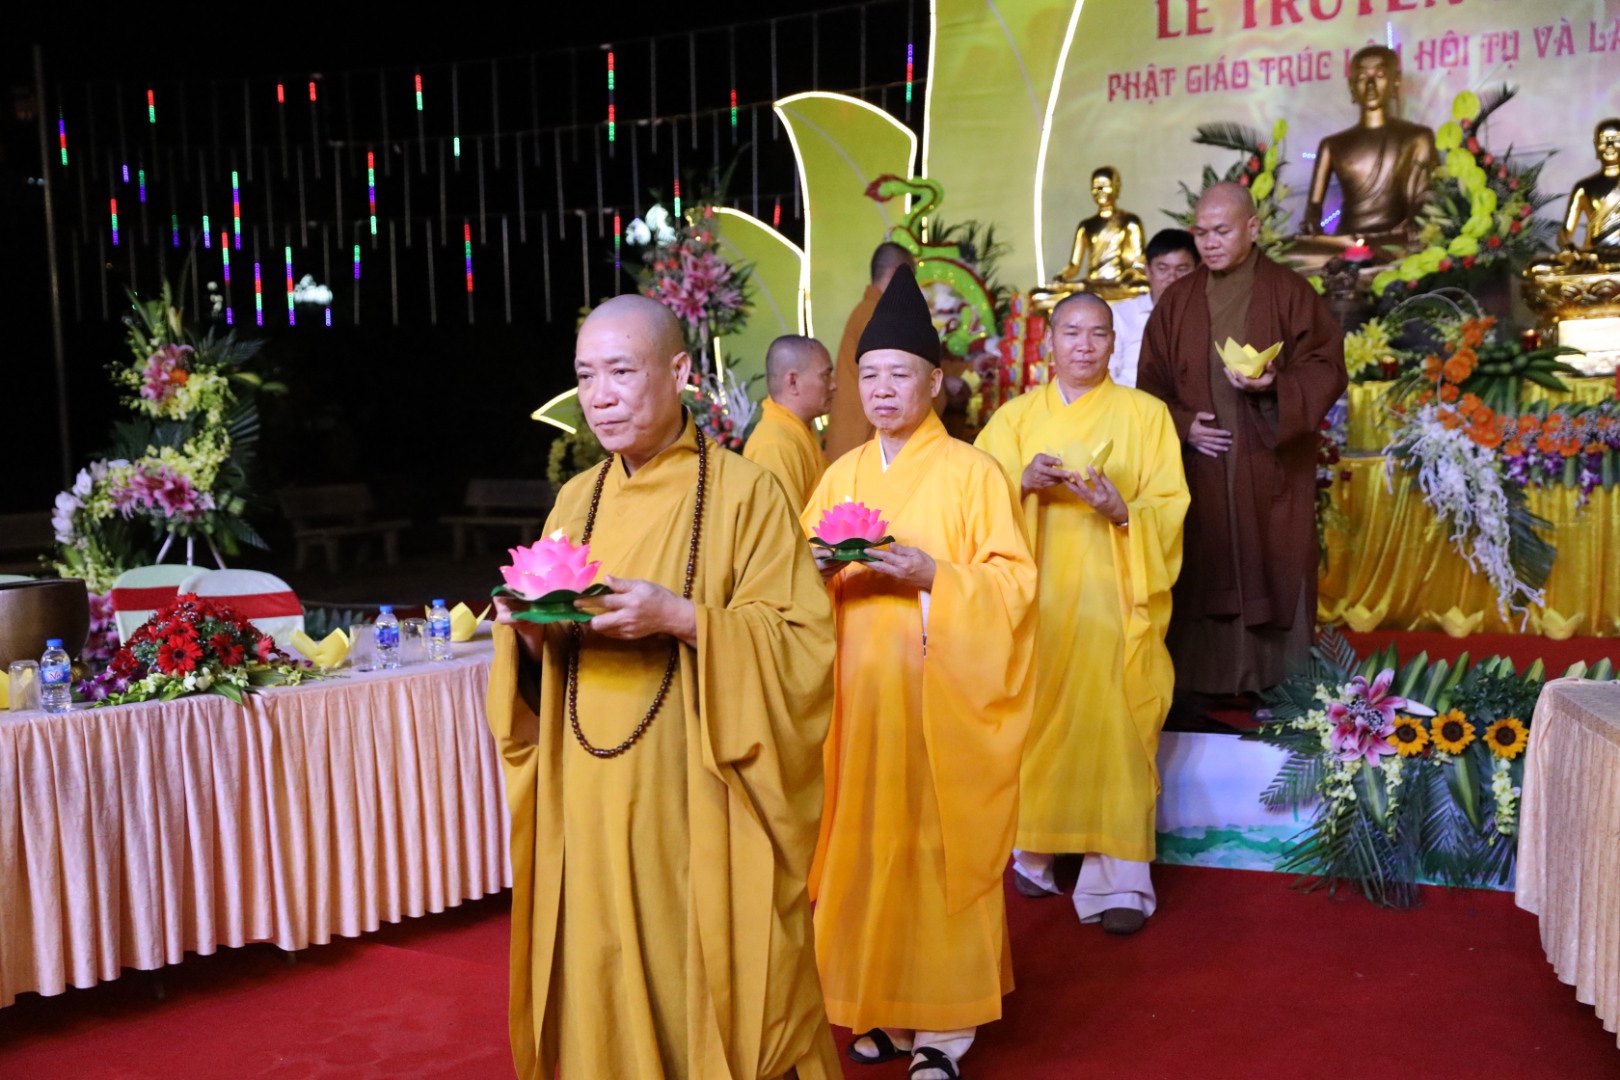 Trang nghiêm đêm hội hoa đăng “Phật giáo Trúc Lâm hội tụ và lan tỏa” 